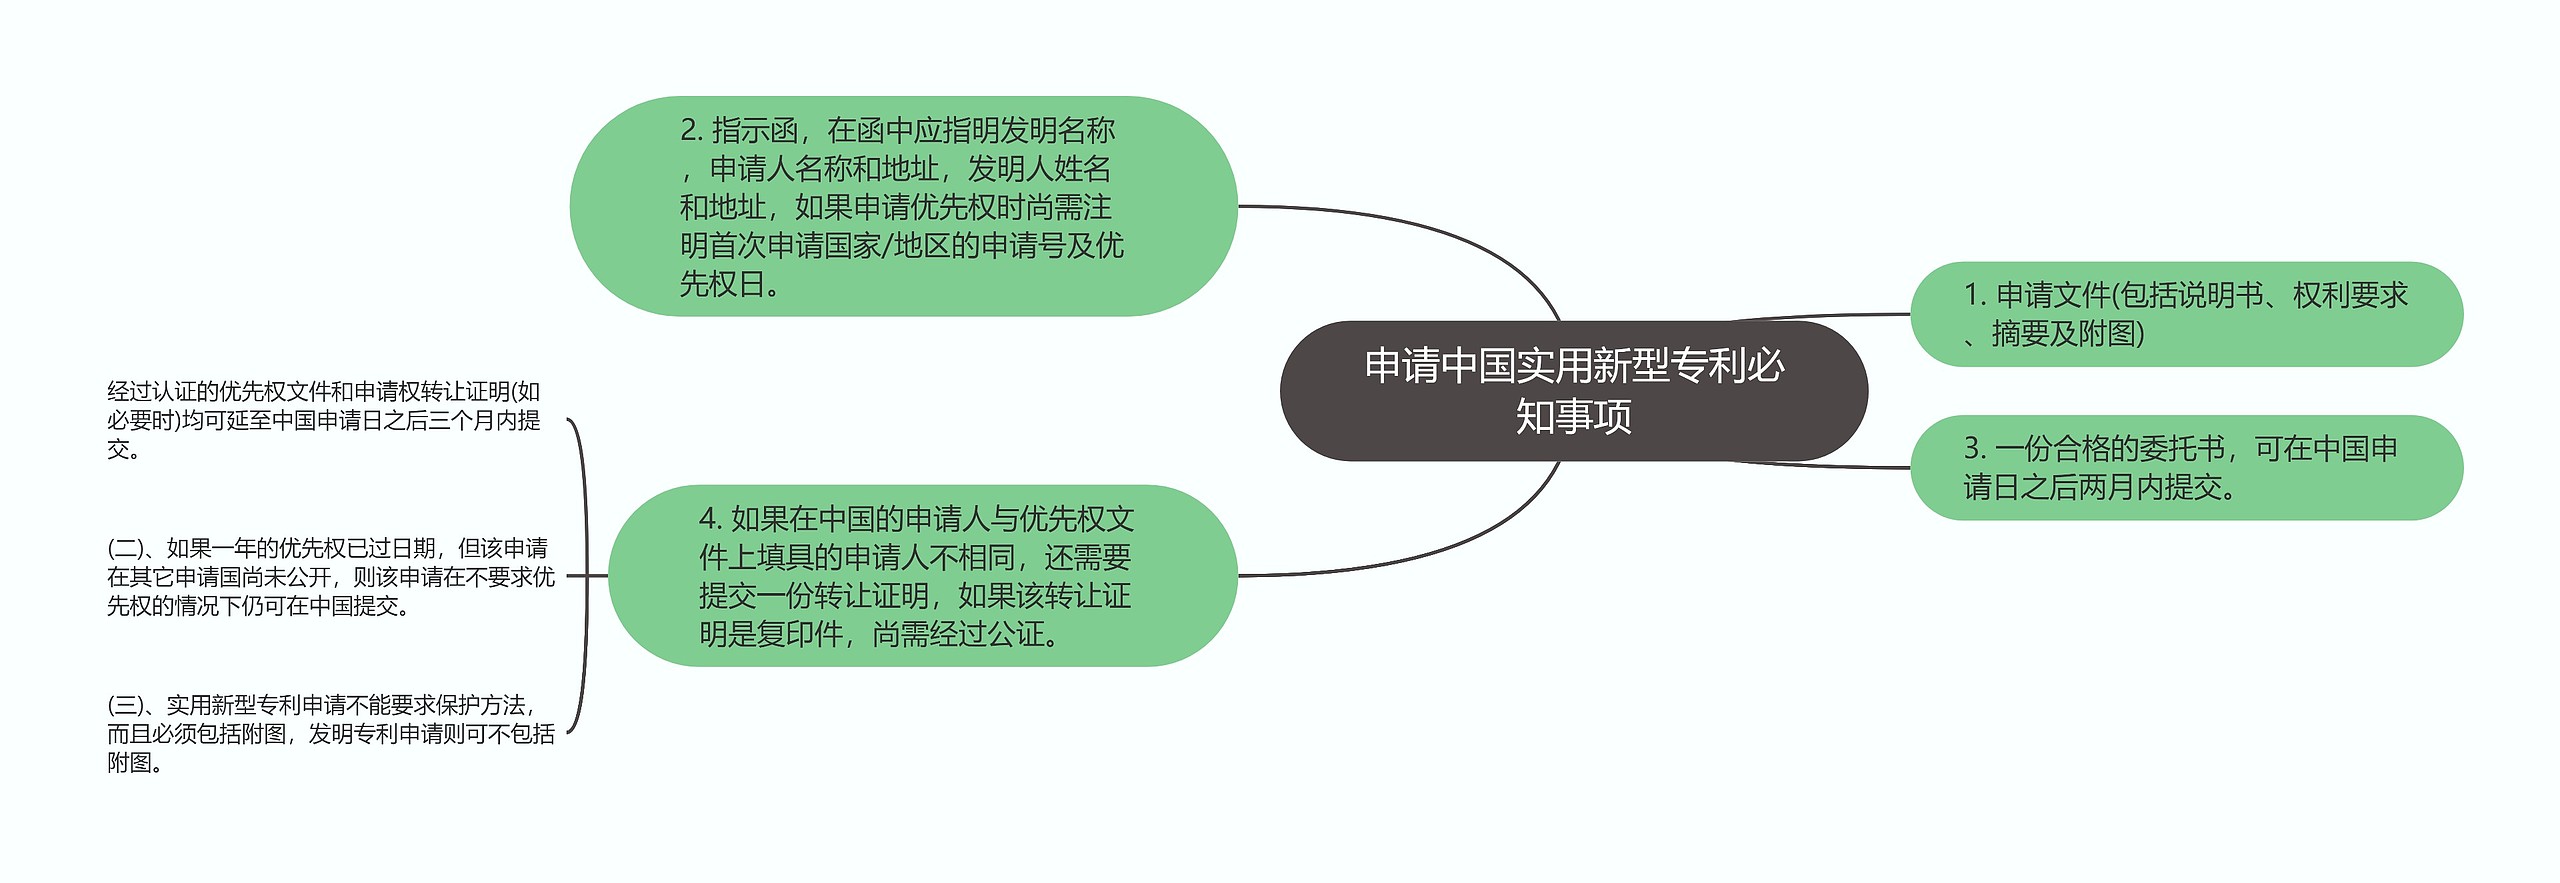 申请中国实用新型专利必知事项